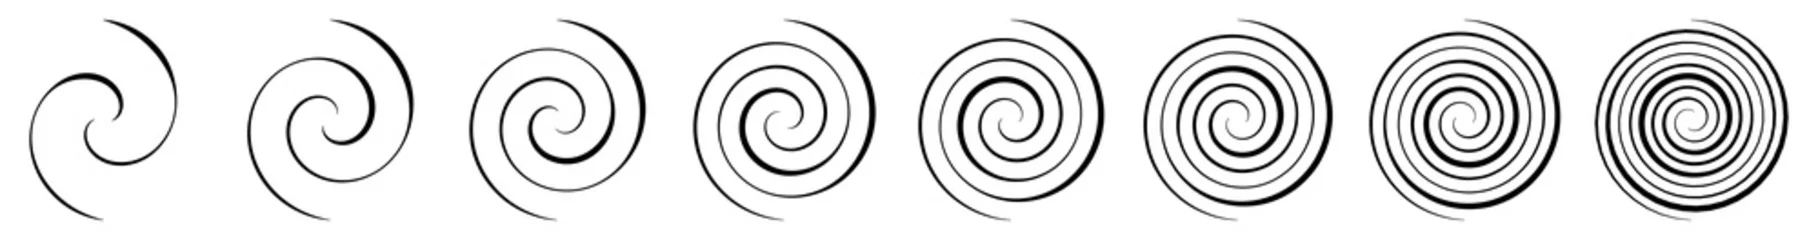 Rolgordijnen Spiral, swirl, twirl and whirl element. Helix, volute ripple, vortex shape © Pixxsa